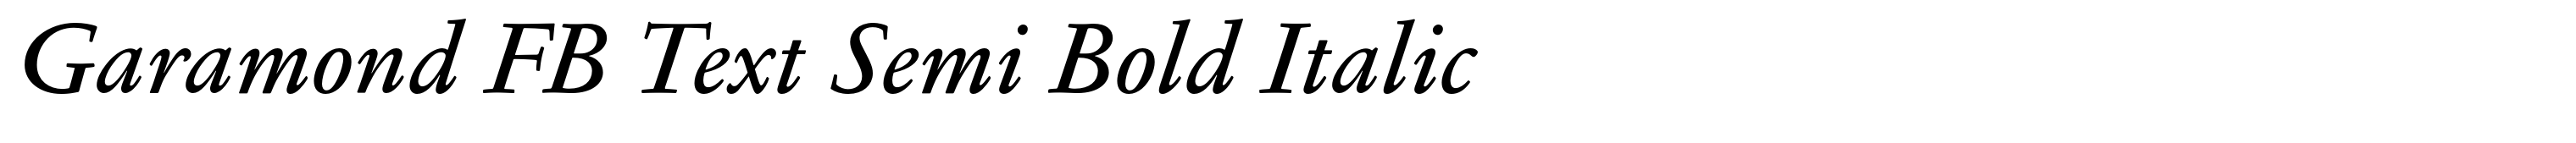 Garamond FB Text Semi Bold Italic